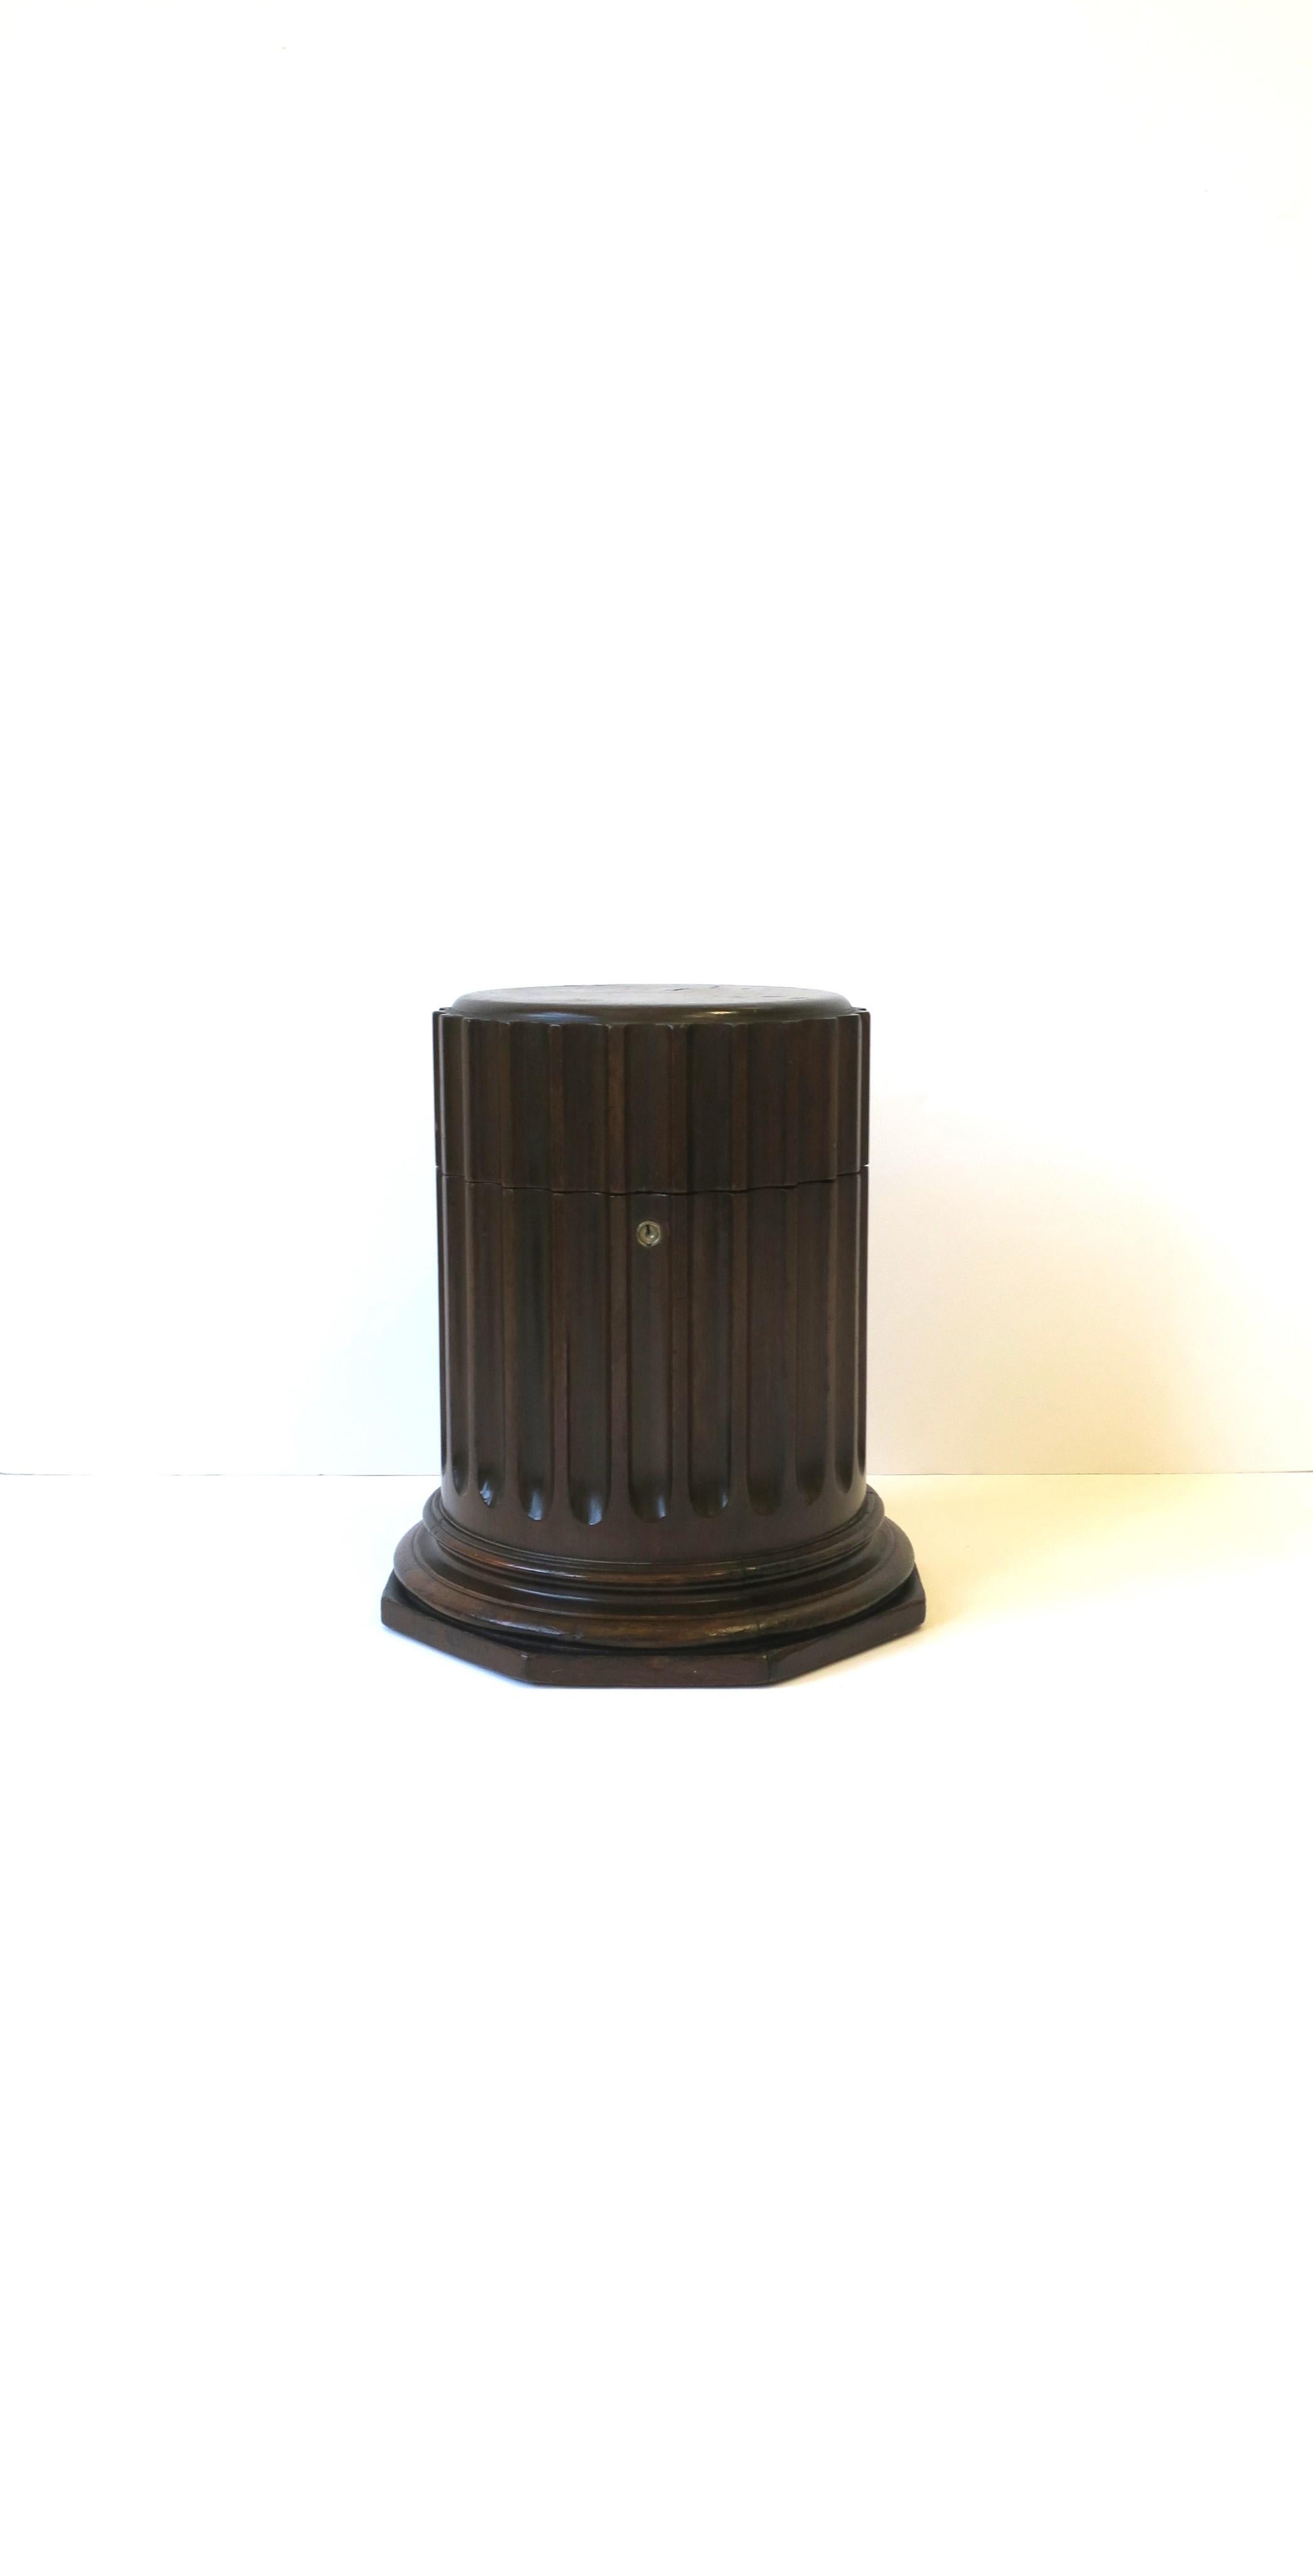 Schöner Säulensockel im neoklassischen Stil, ca. Mitte des 20. Jahrhunderts, USA. Das Stück ist aus dunkelbraunem Holz mit einem achteckigen Sockel und einer kannelierten Säule. Die Box öffnet sich zu einem Innenbereich, der ebenfalls achteckig ist